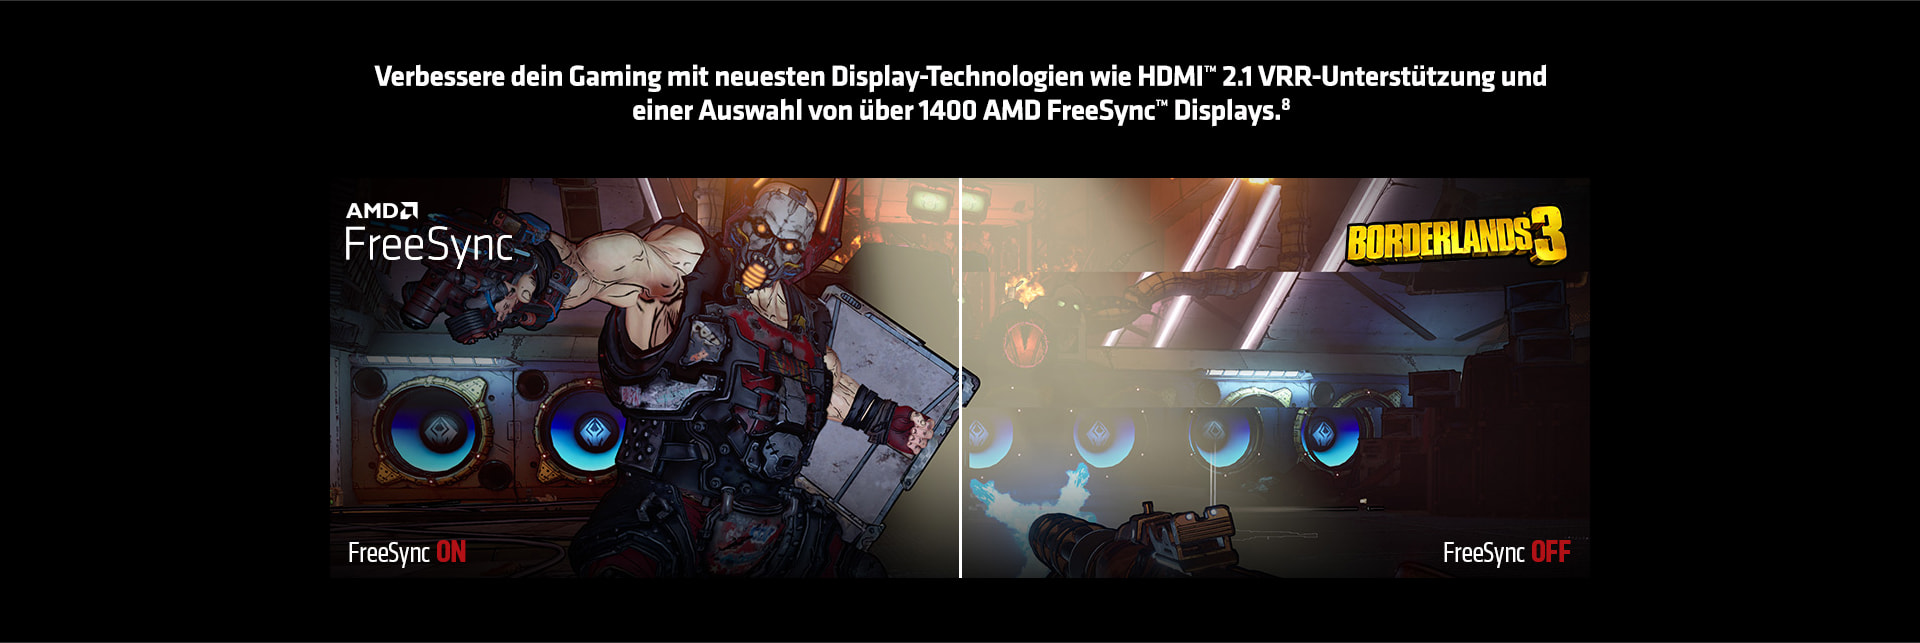 Neueste Display-Technologien wie HDMI 2.1 VRR-Unterstützung und FreeSync Displays.